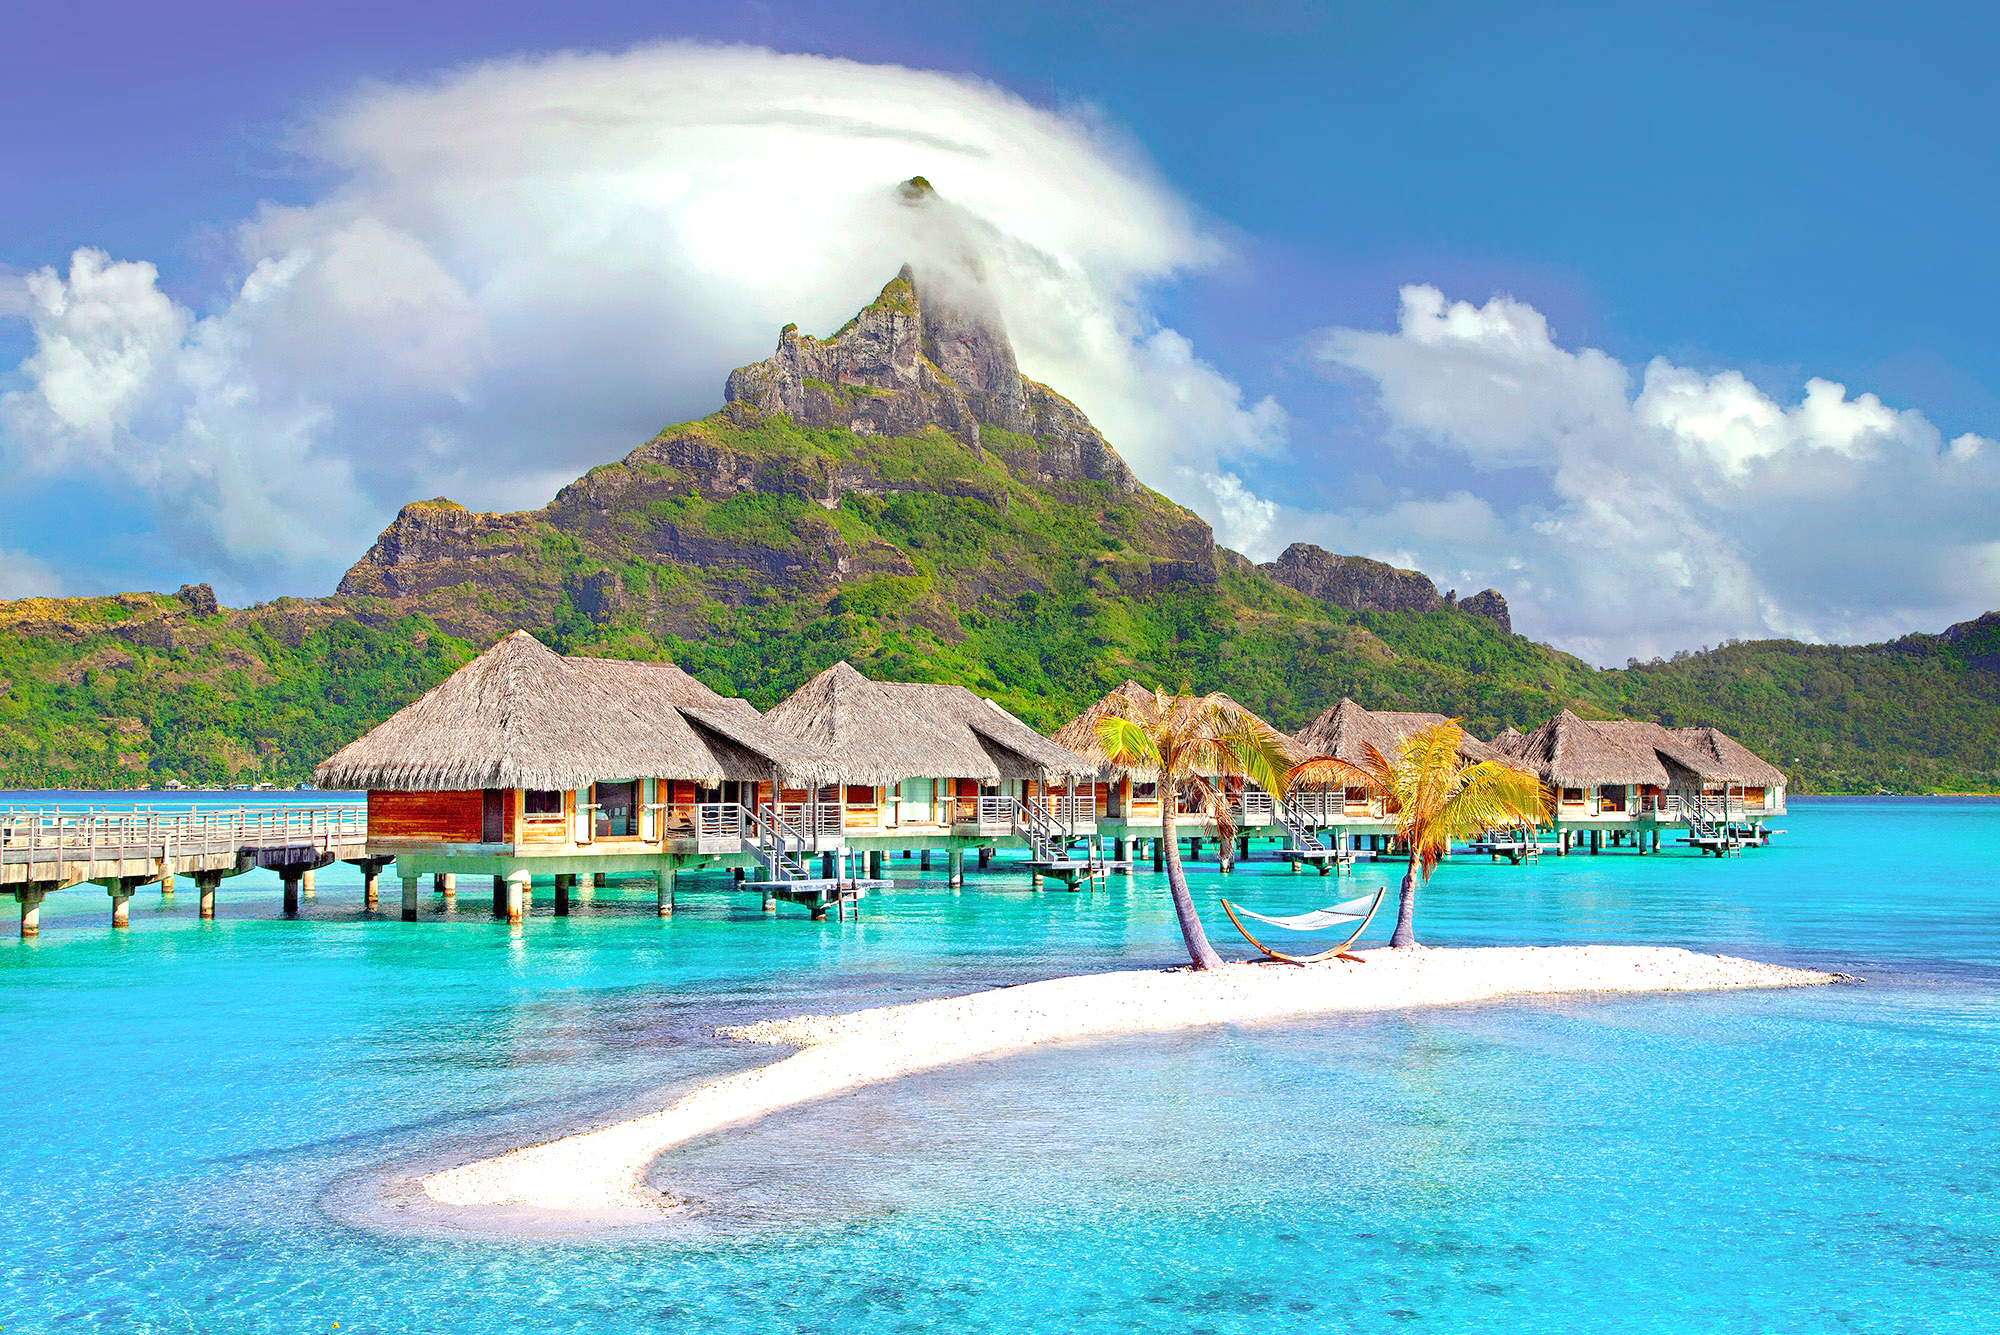 Picture shows a scenic Tahiti.